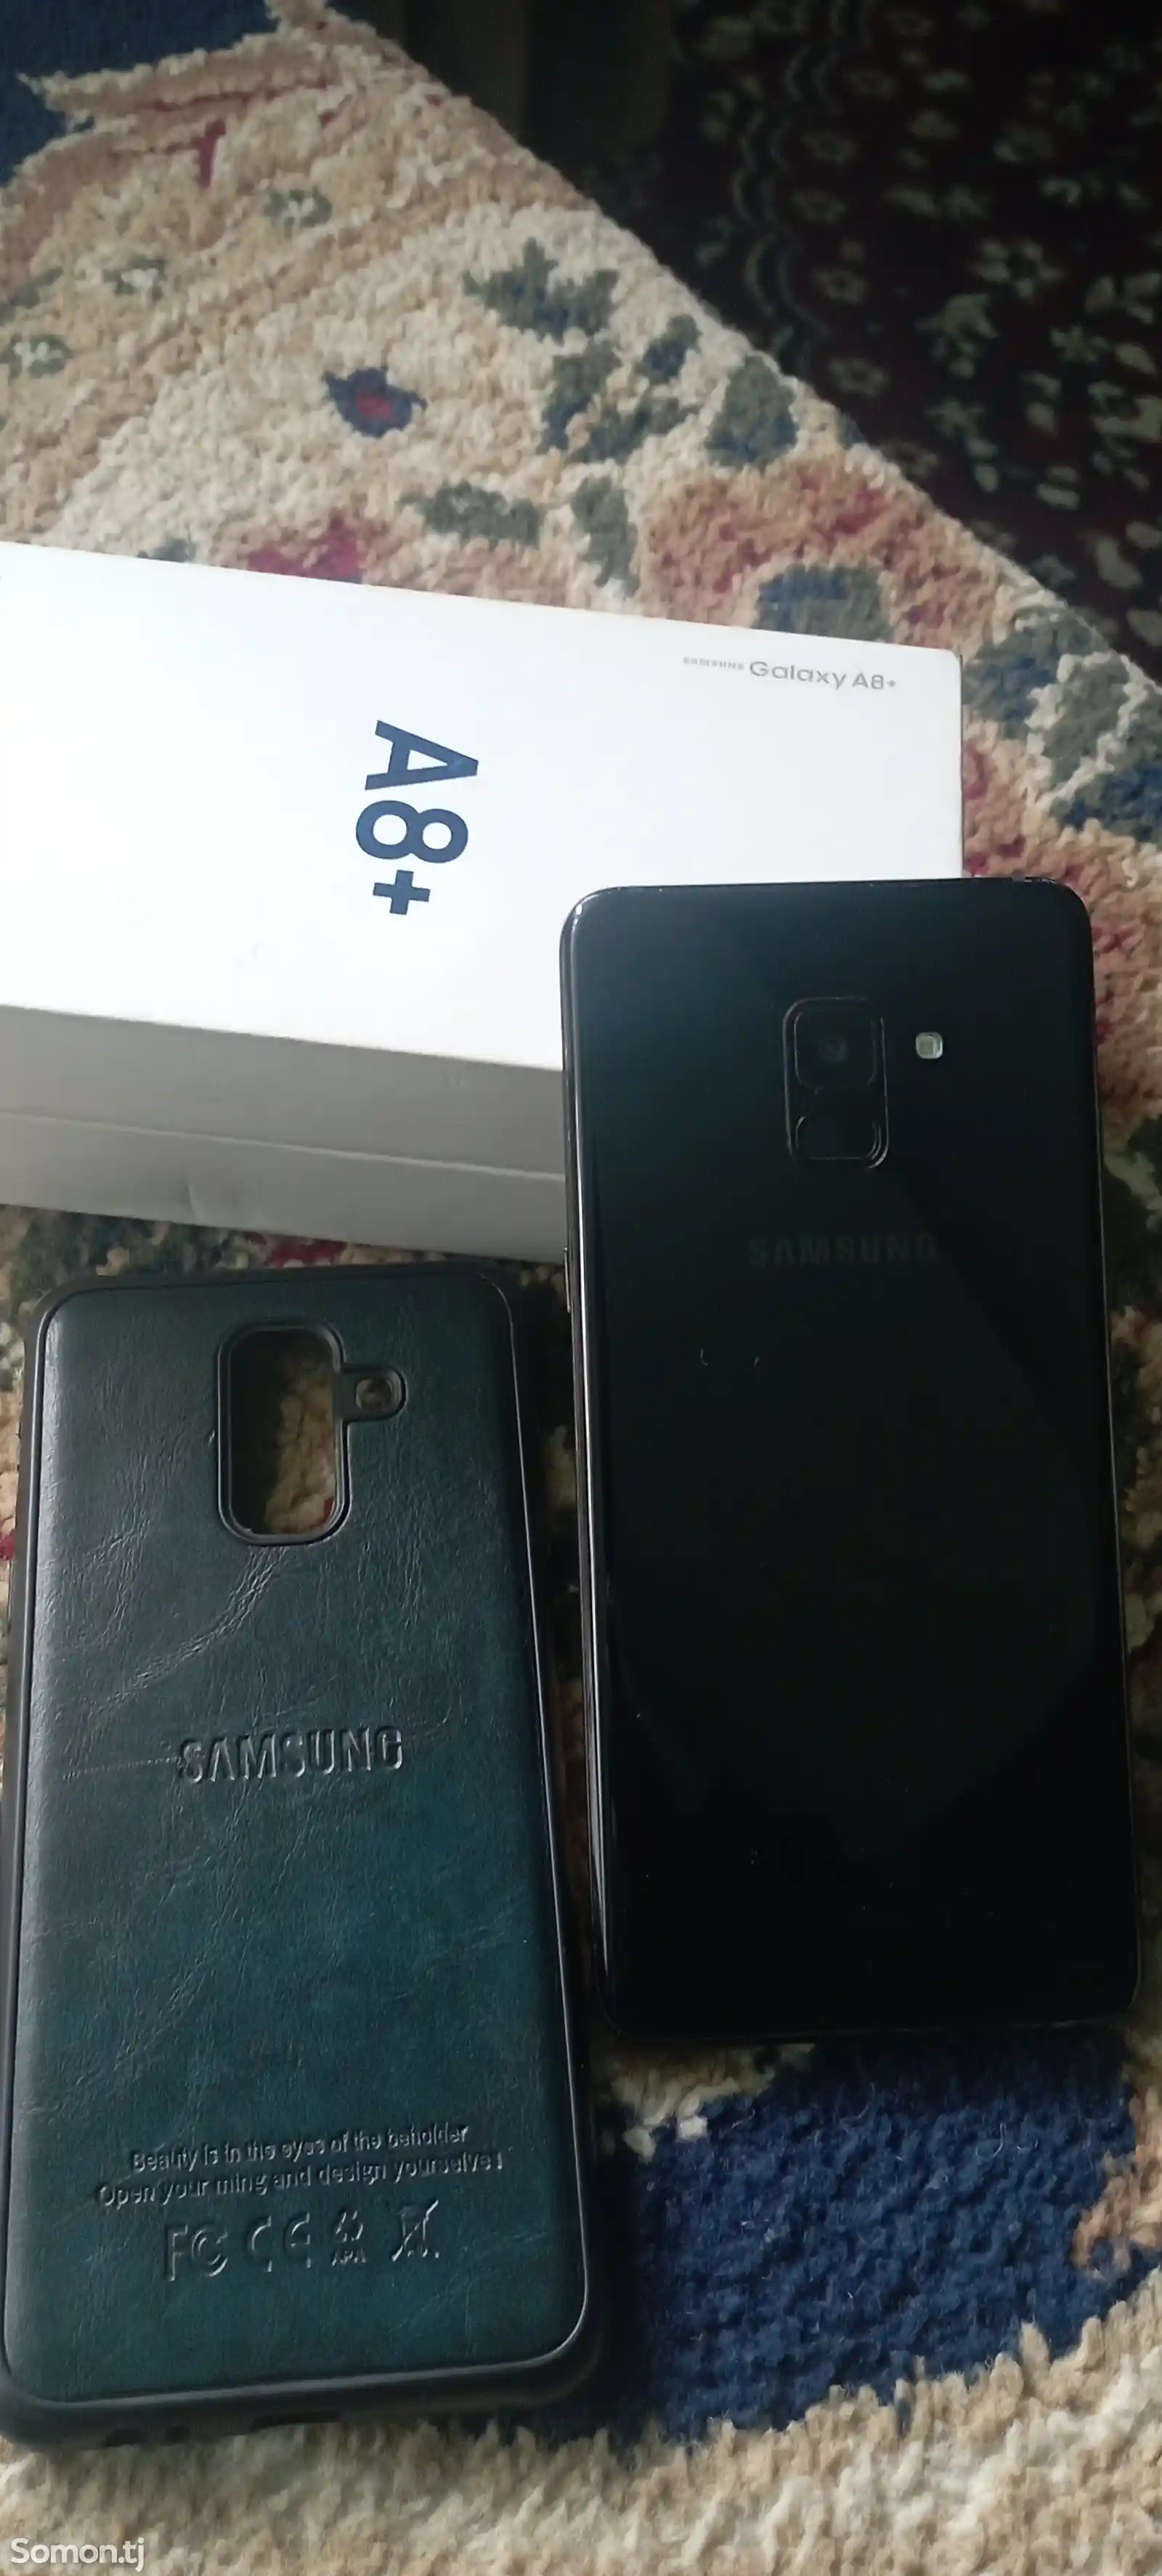 Samsung Galaxy A8+-3